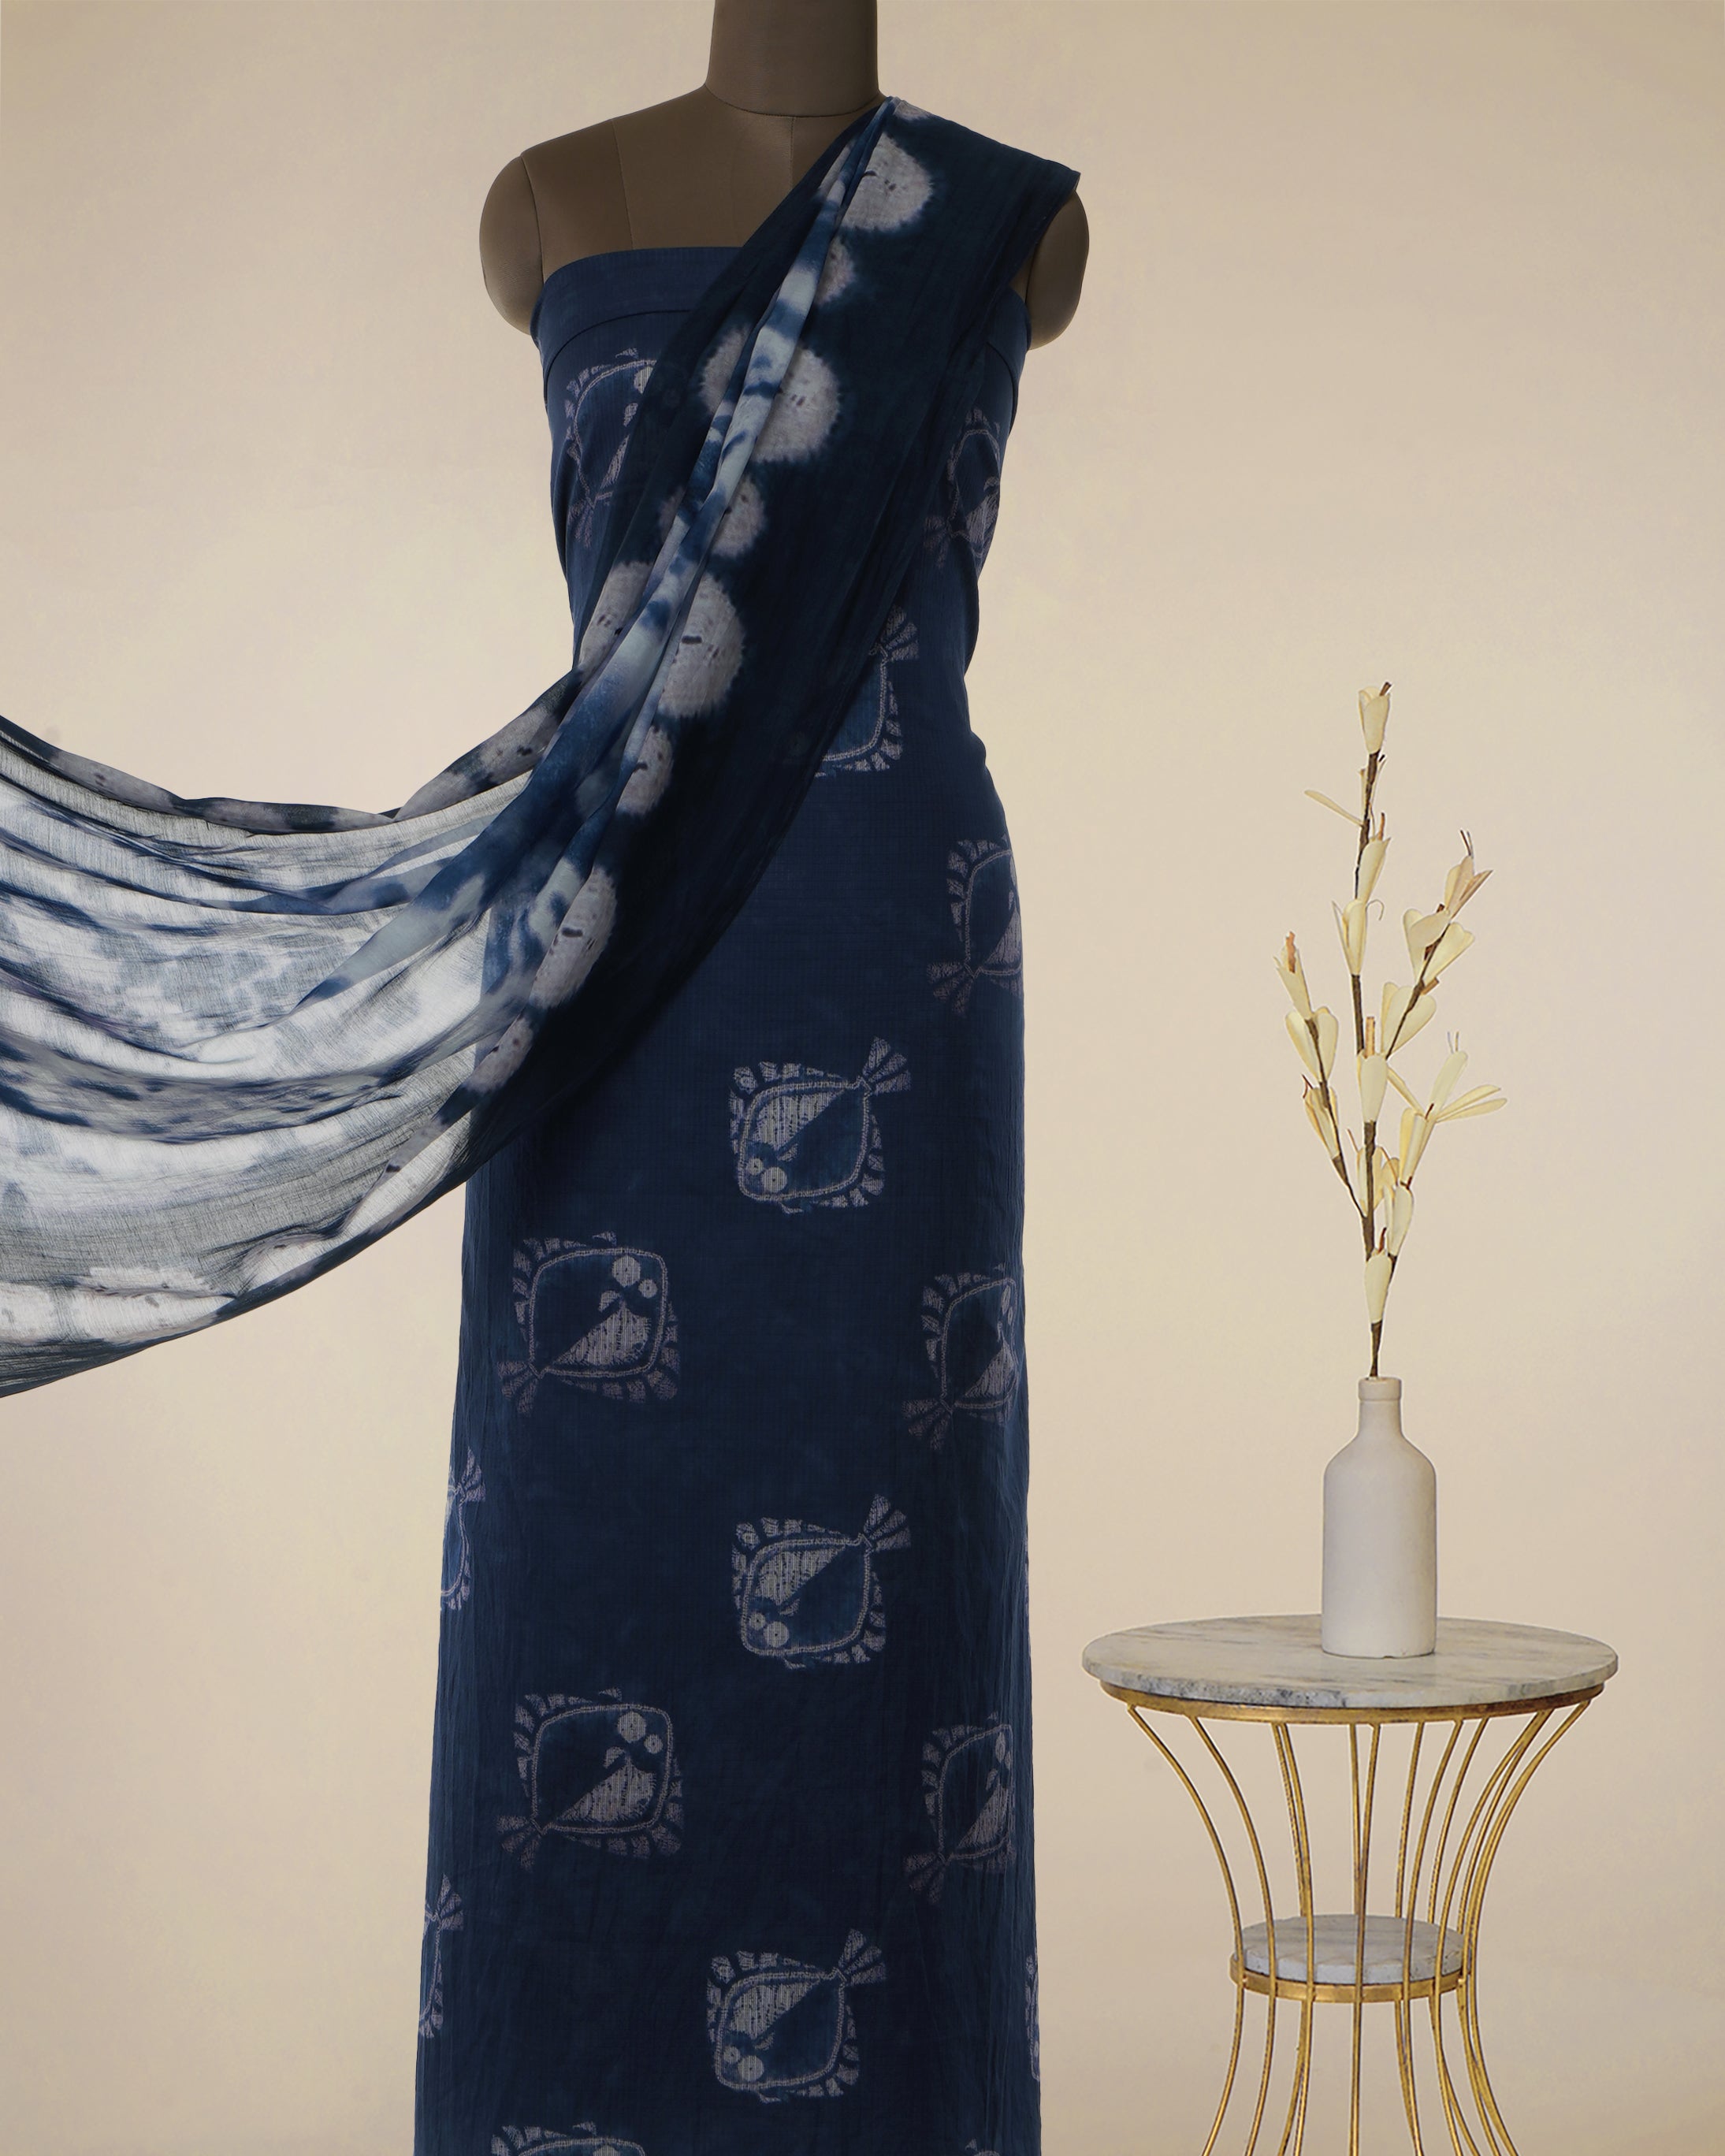 Navy Blue Motif Pattern Digital Print Fancy Cotton Unstitched Suit Set (Top & Dupatta)